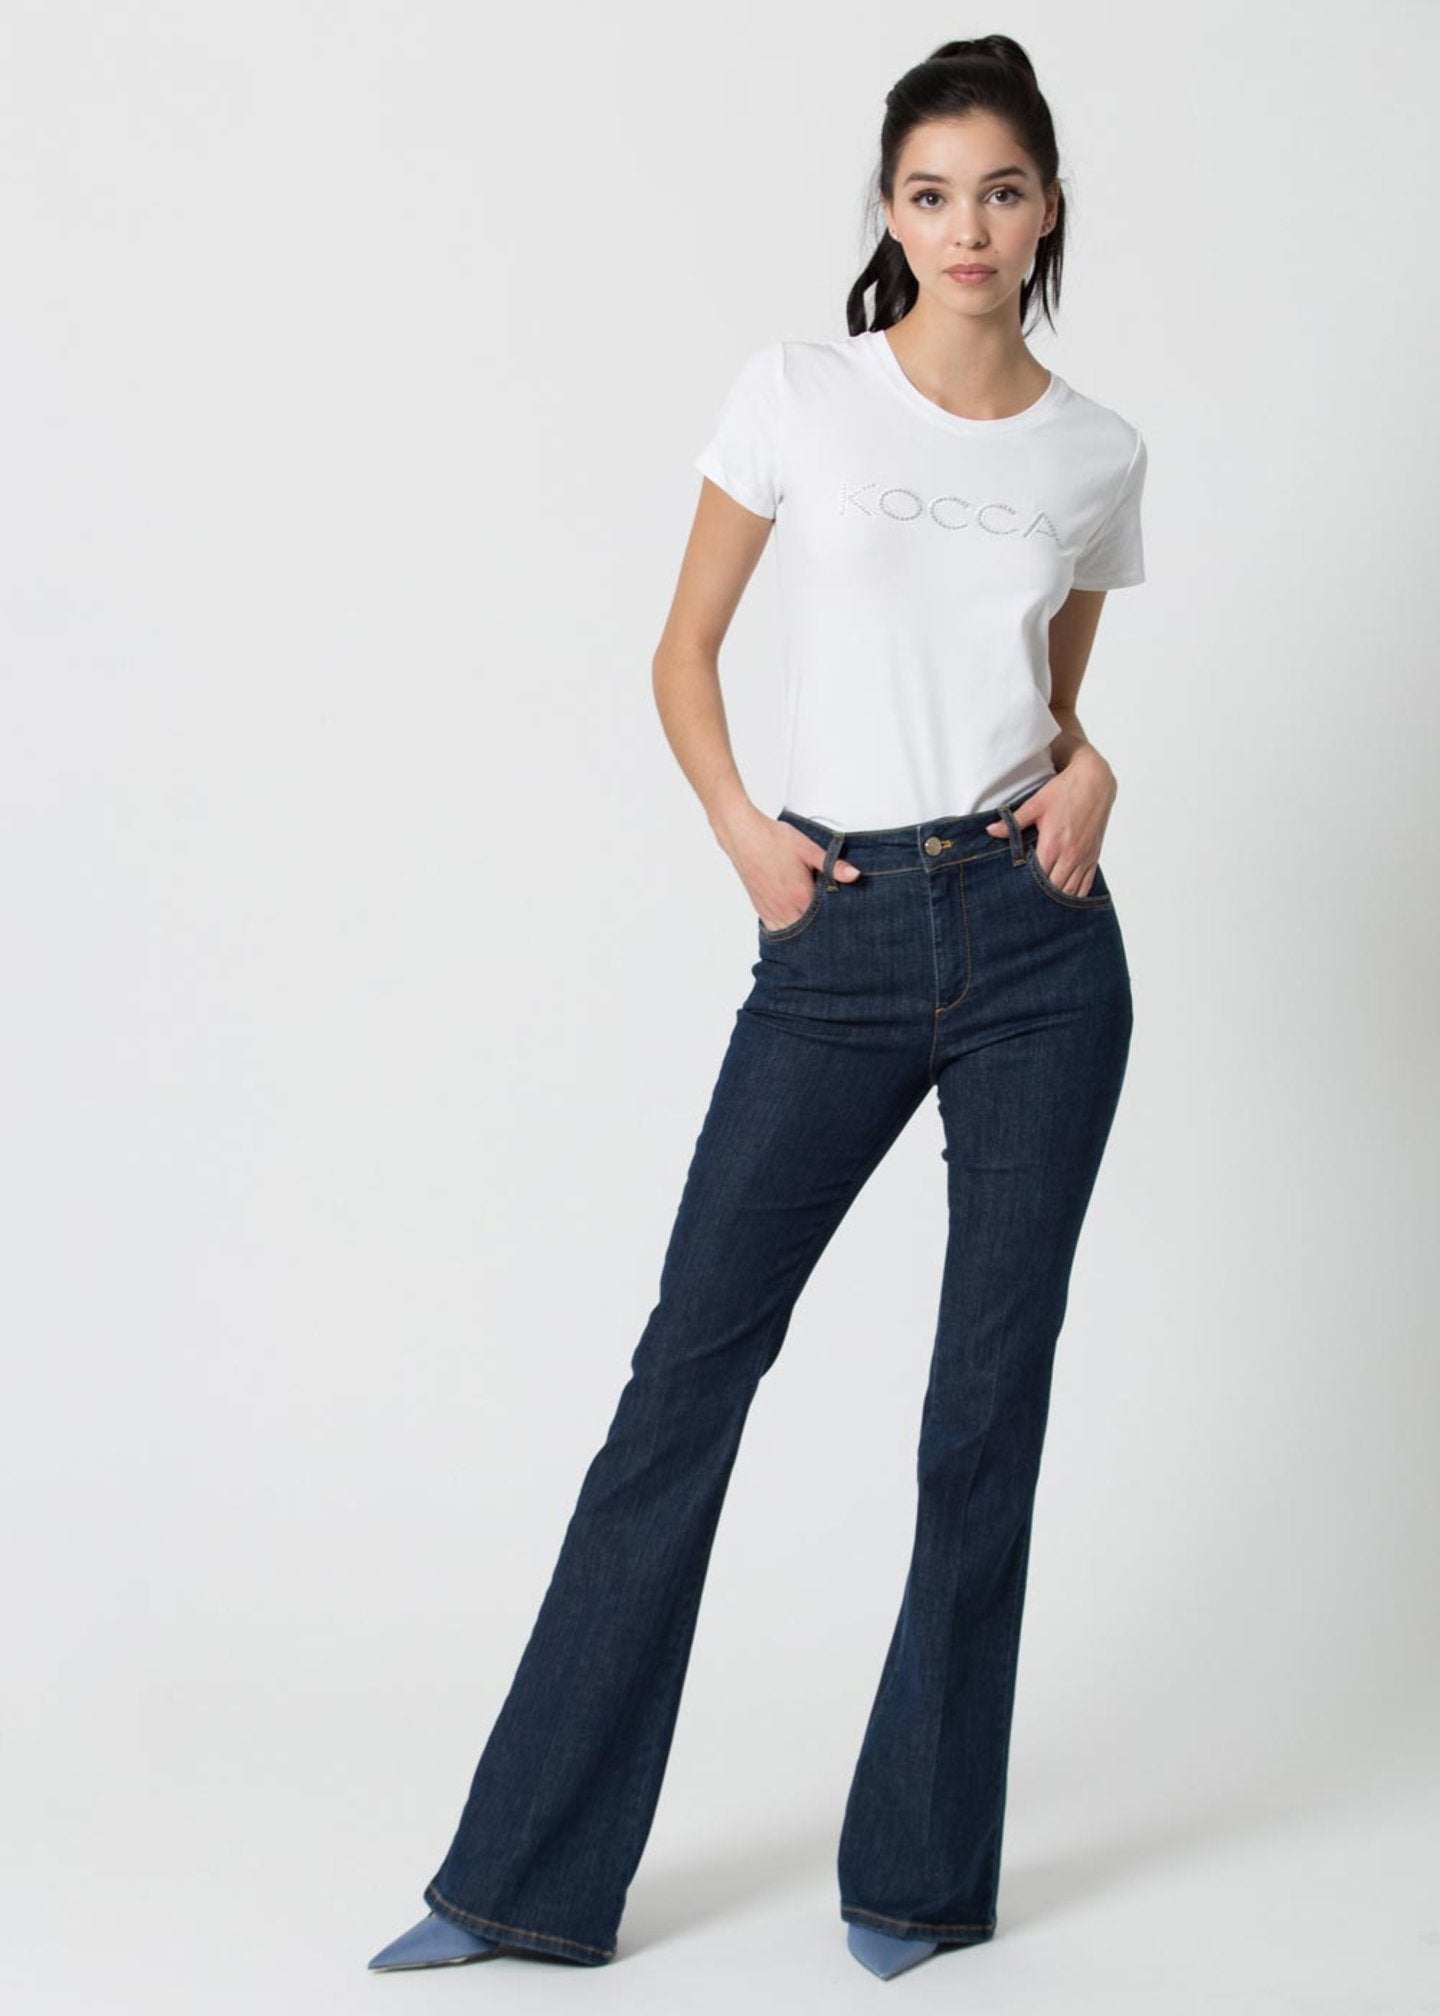 Jeans Kocca a Zampa / Jeans - Ideal Moda